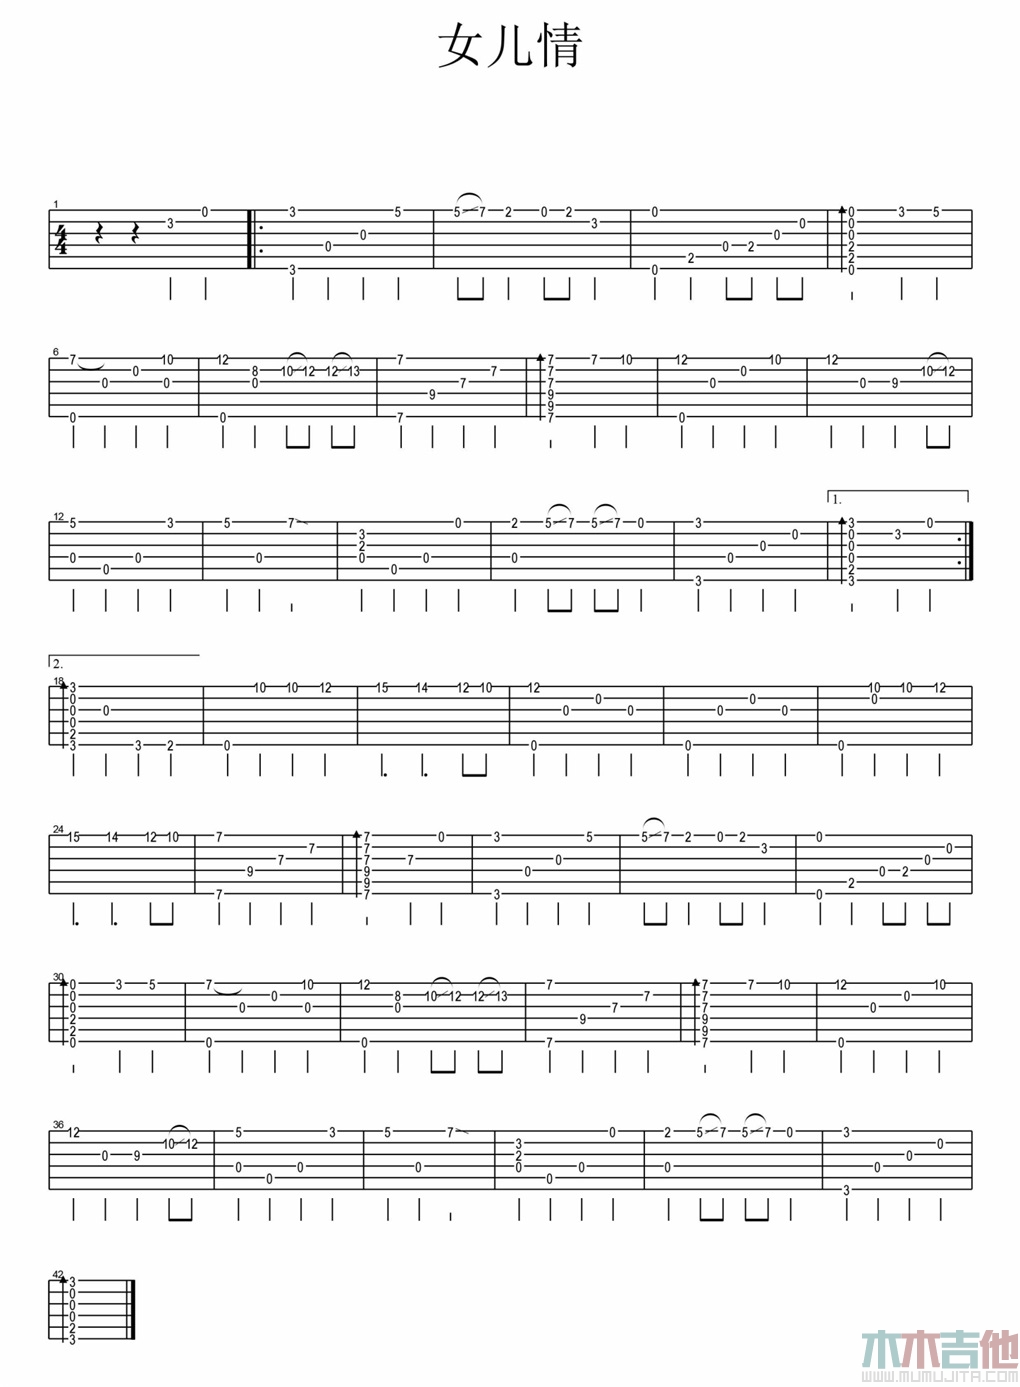 吴静《女儿情 指弹 》吉他谱-Guitar Music Score